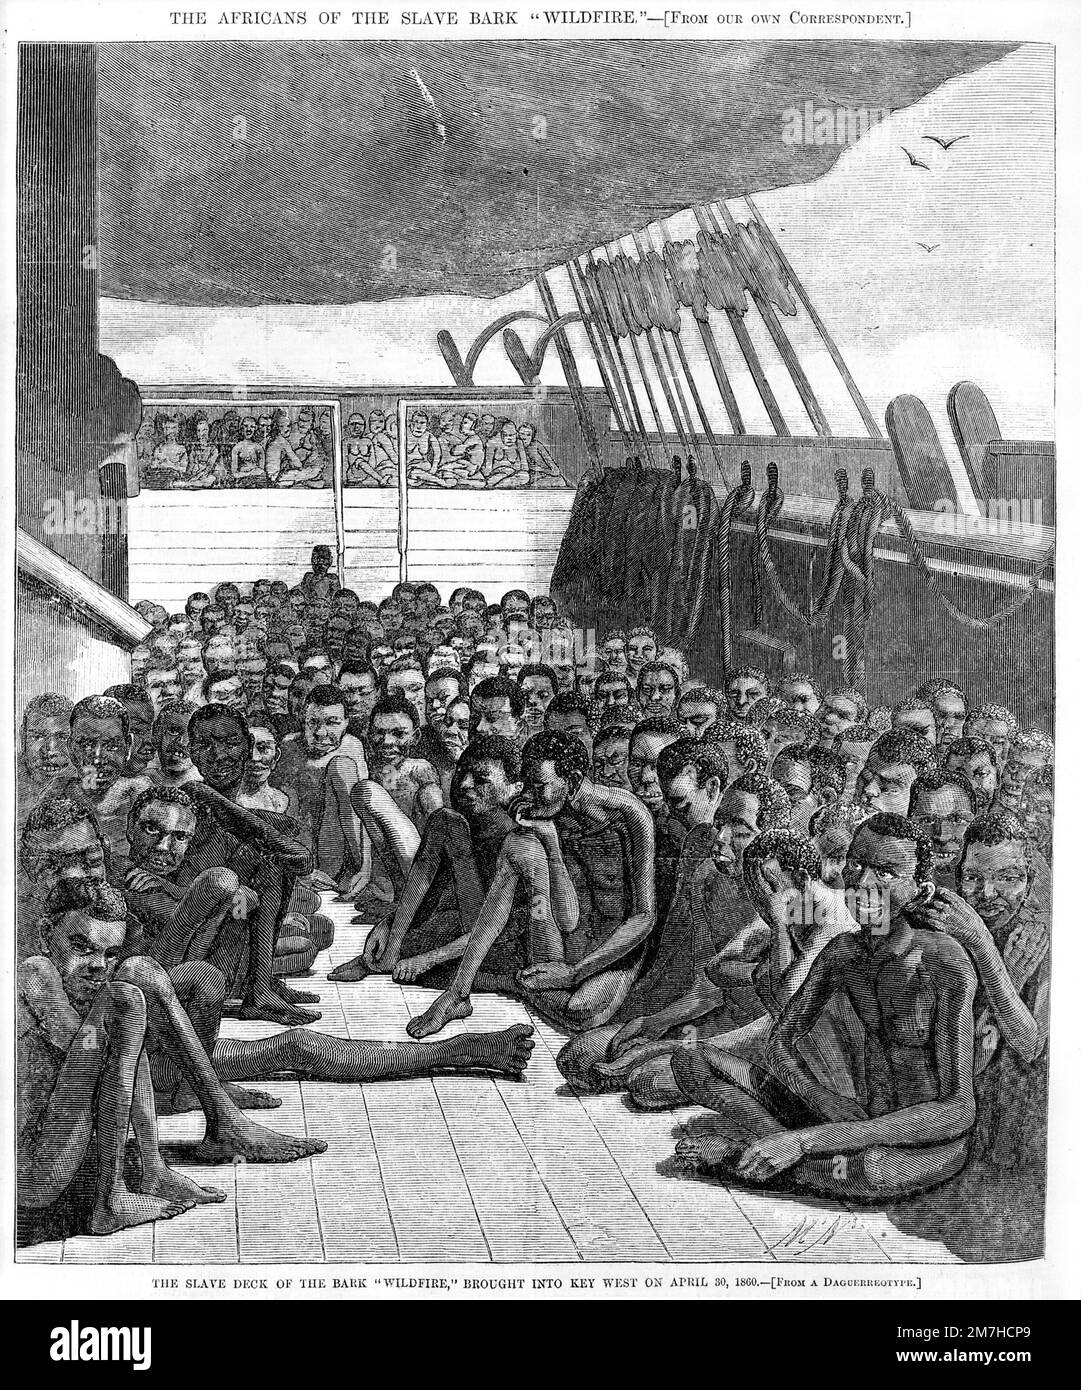 Illustrazione della nave schiava americana Wildfire trasportava schiavi in Europa e nelle Americhe, mostrando le condizioni terribilmente sovraffollate in cui venivano trasportati gli schiavi. Foto Stock